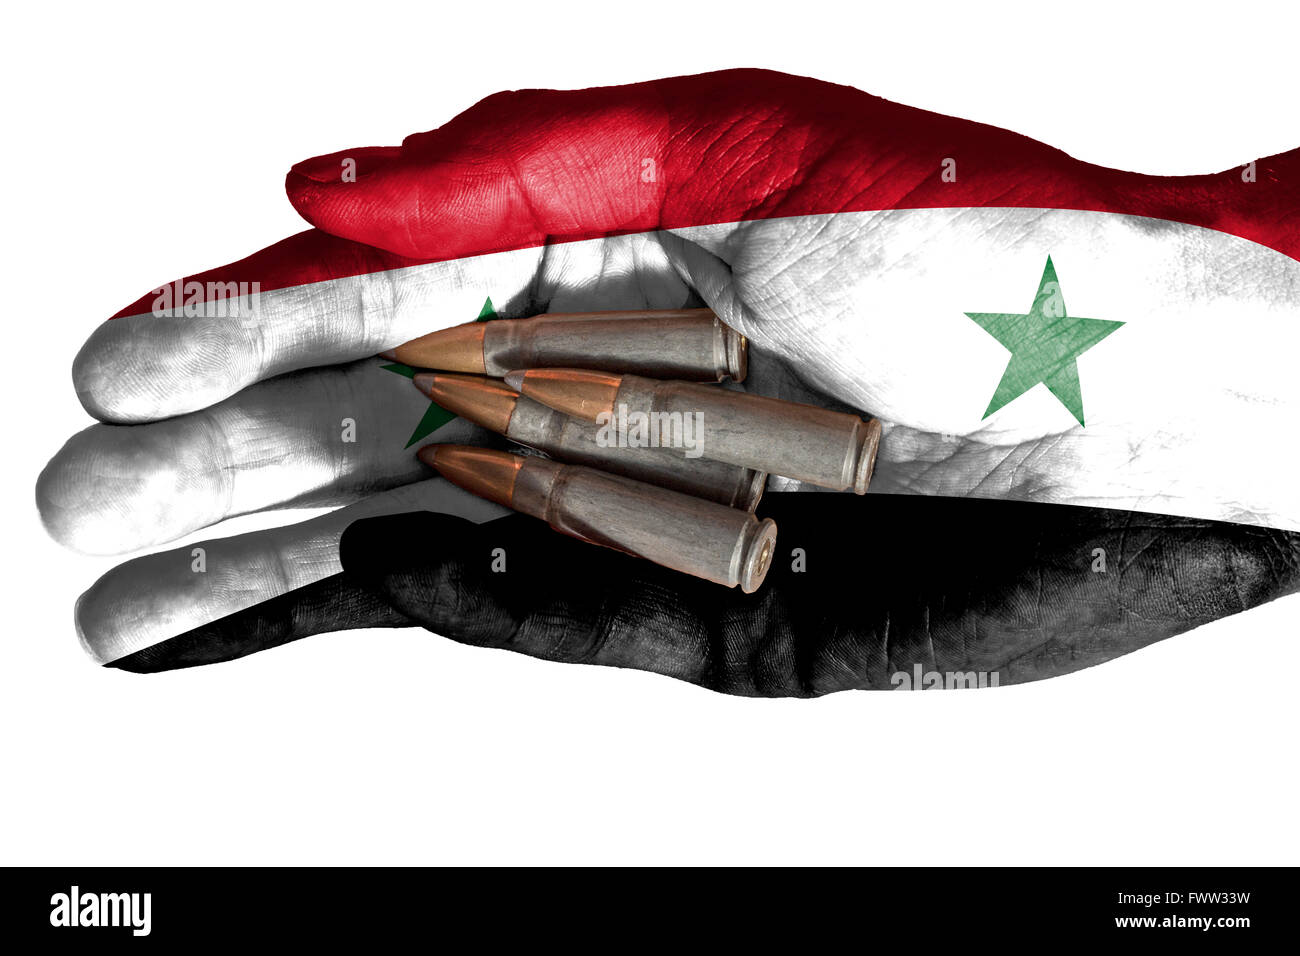 Bandiera dell'Iraq sovrapposta la mano di un uomo adulto regge quattro proiettili. Immagine concettuale per la guerra, la violenza, conflitti. Isolat di immagine Foto Stock